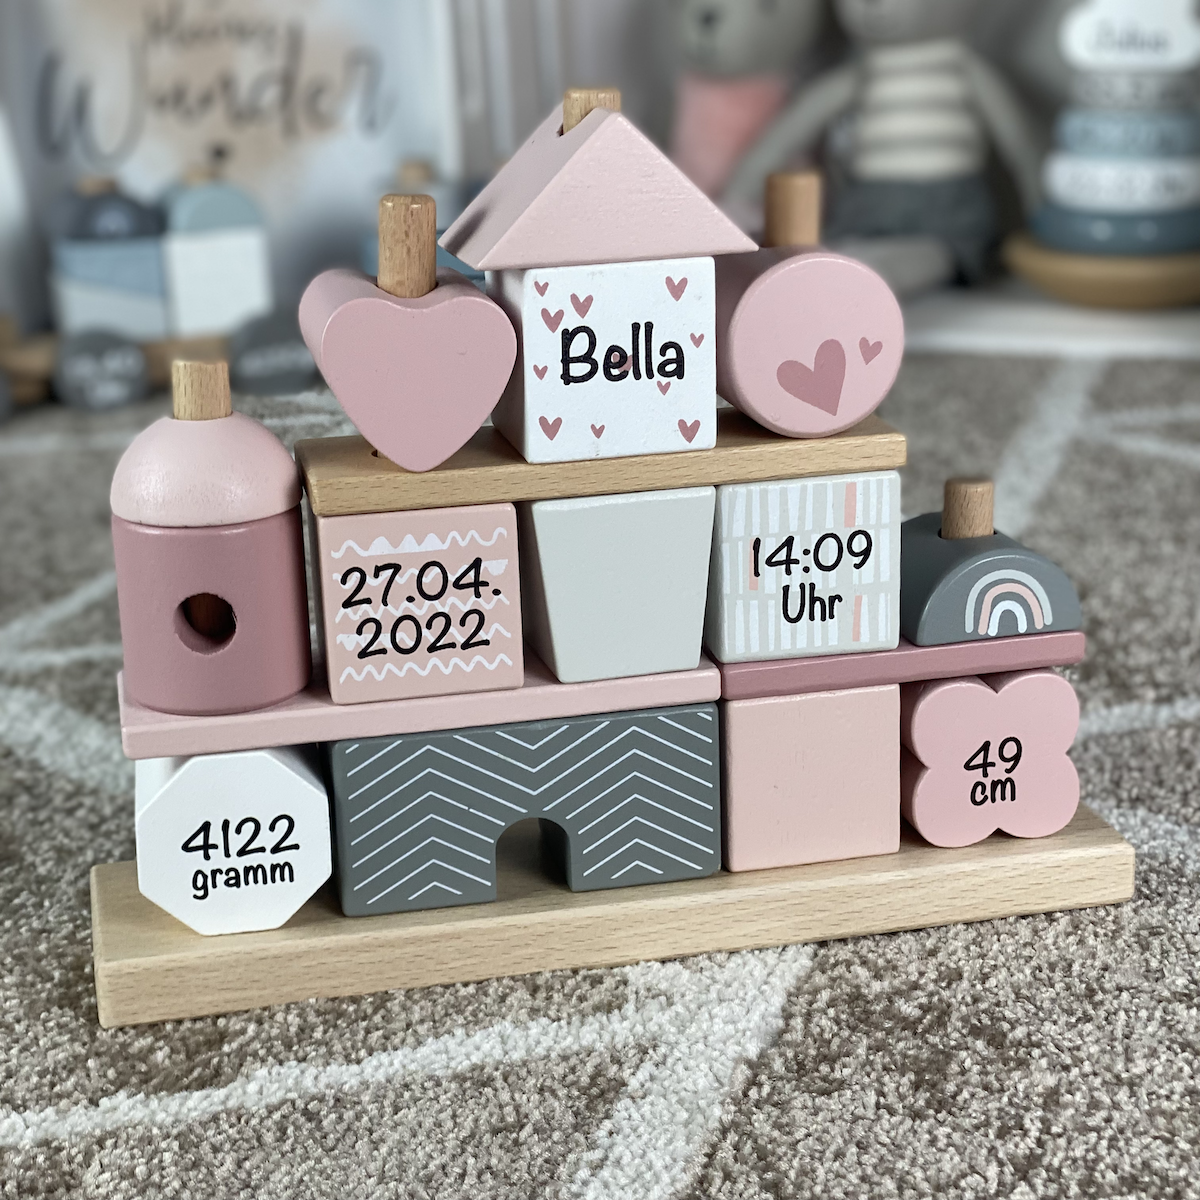 Label Label Stapel Steckspiel Haus rosa Personalisiertes Geschenk Baby Geburt 